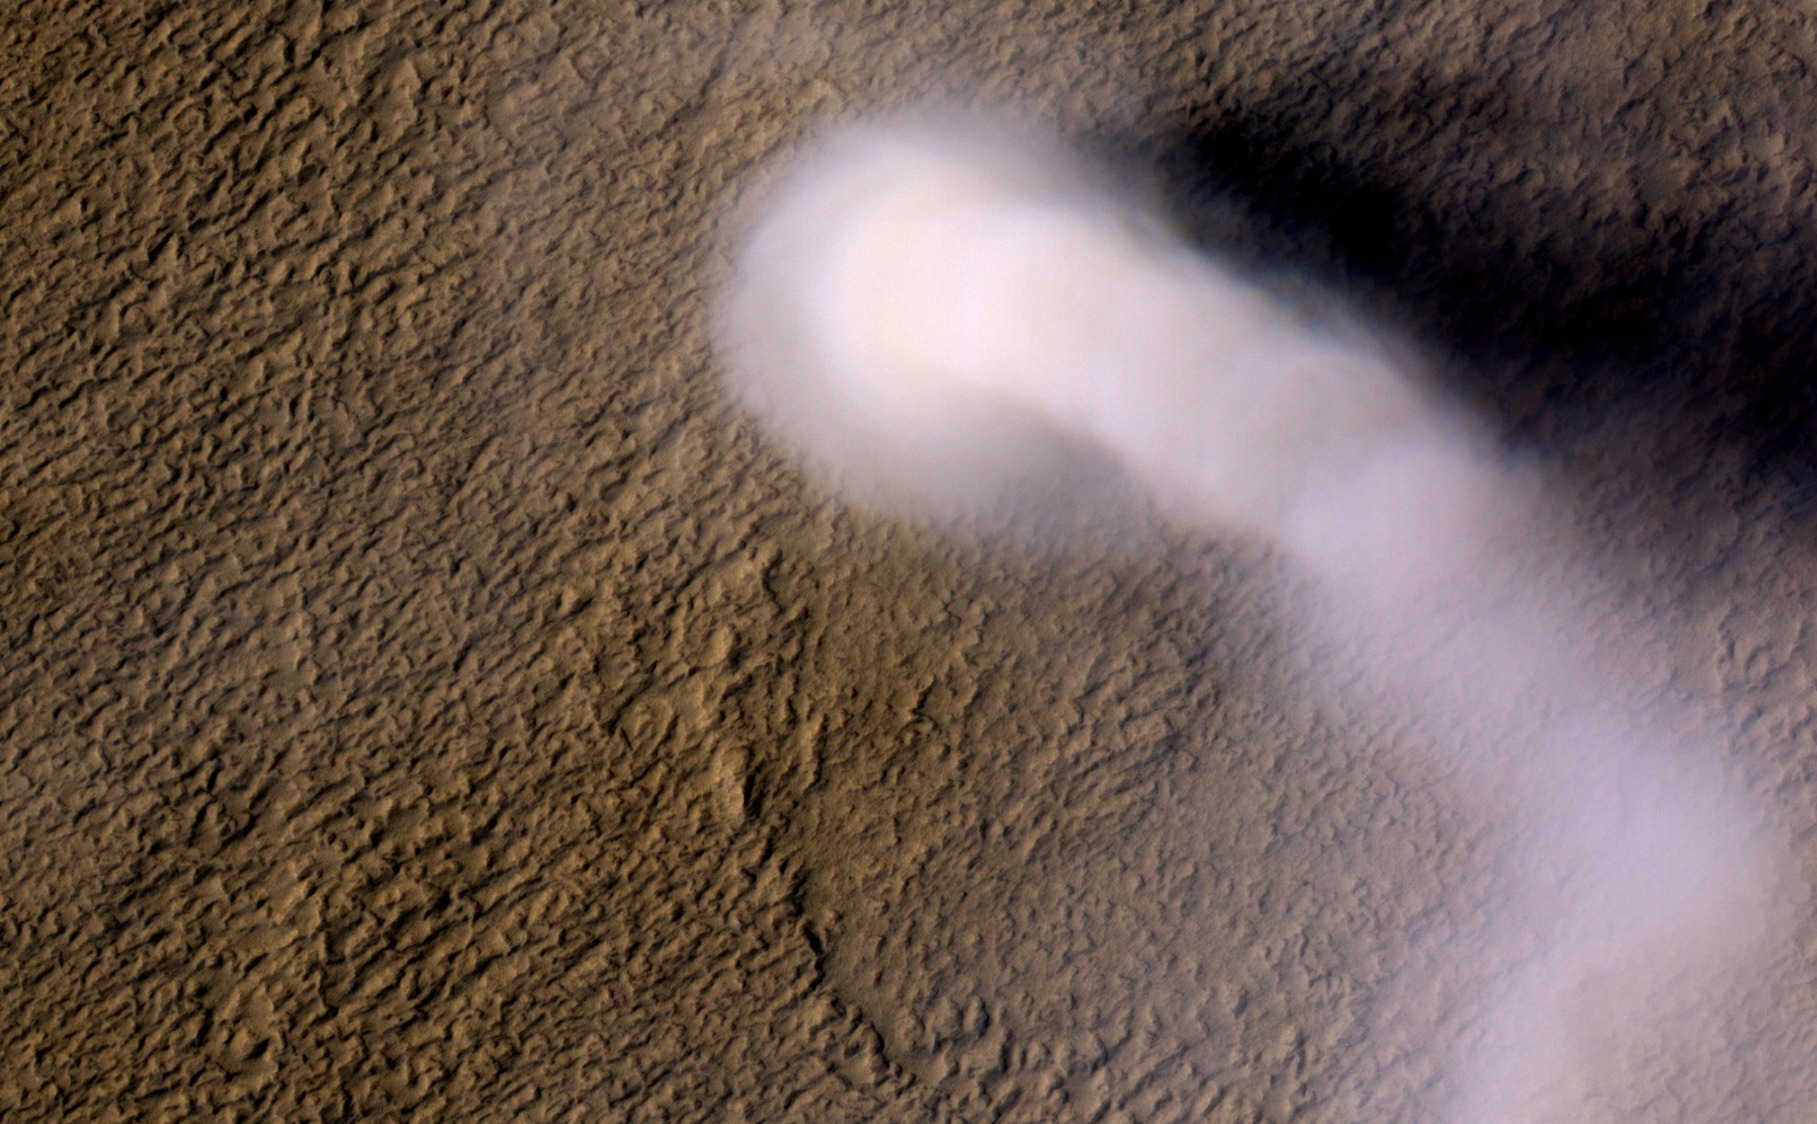 Pijavica (tj. 'vrag prašine') kojeg je odozgo snimila HiRISE kamera Mars Reconnaissance Orbitera. Pijavica je široka oko 70 metara i visoka čak do 20 kilometara (©NASA/JPL-Caltech/UA).